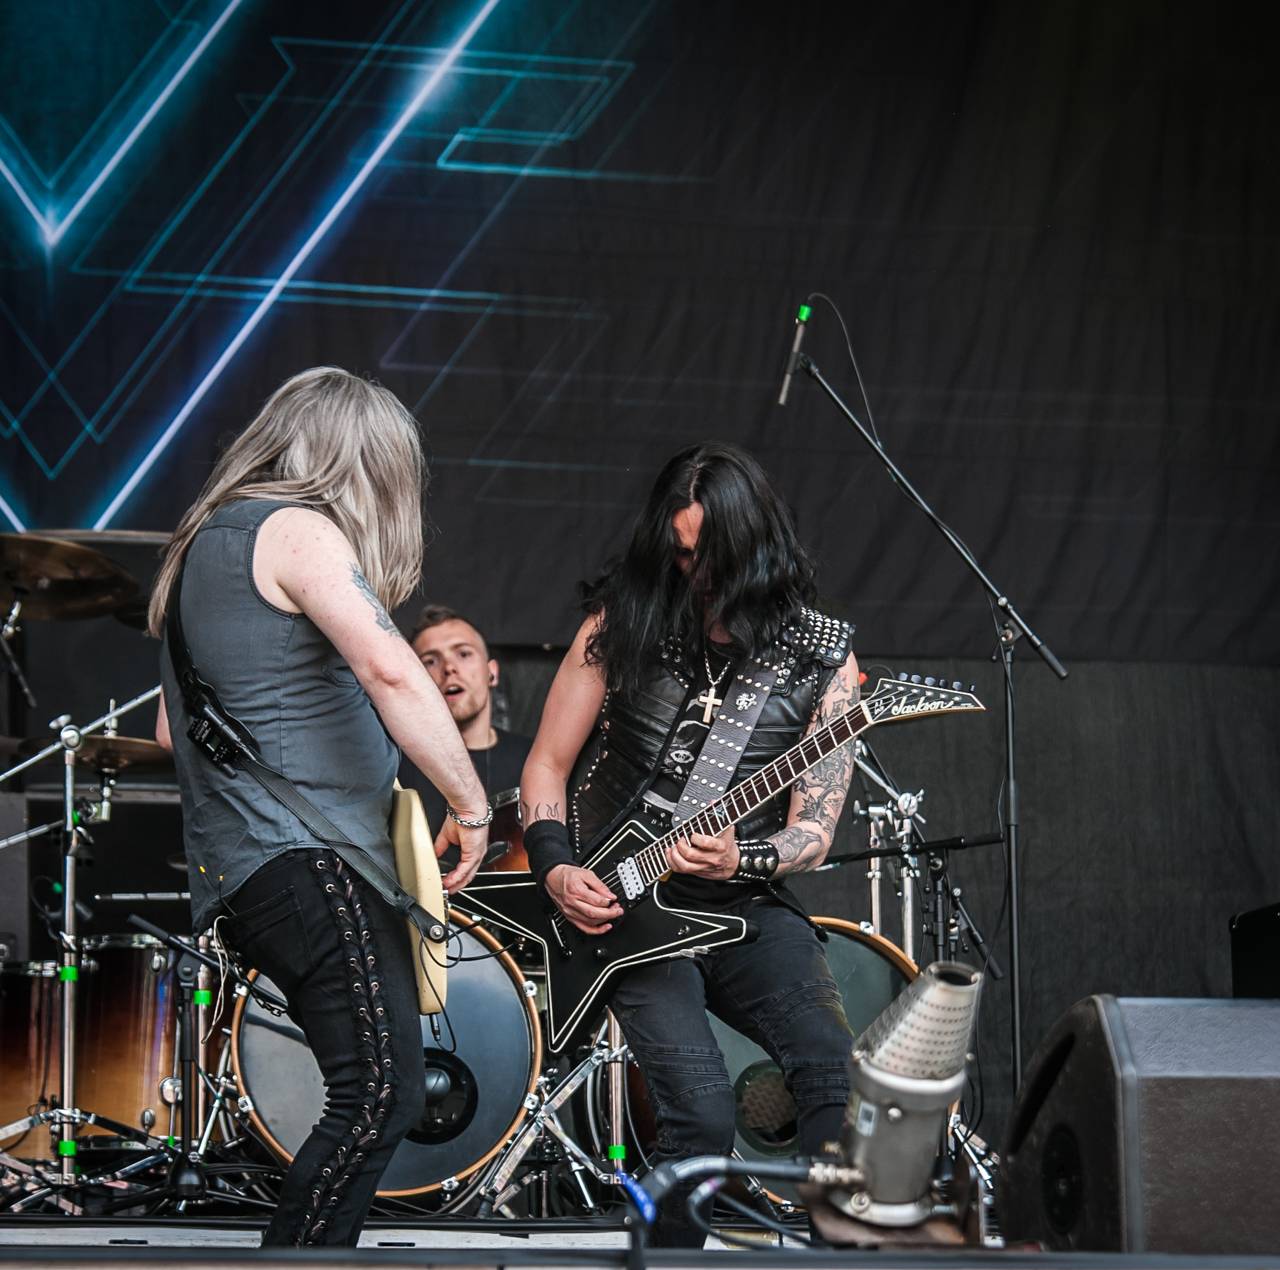 Sobotní Metalfest byl ve znamení Amon Amarth, Cradle of Filth, Stratovarius nebo Beast in Black